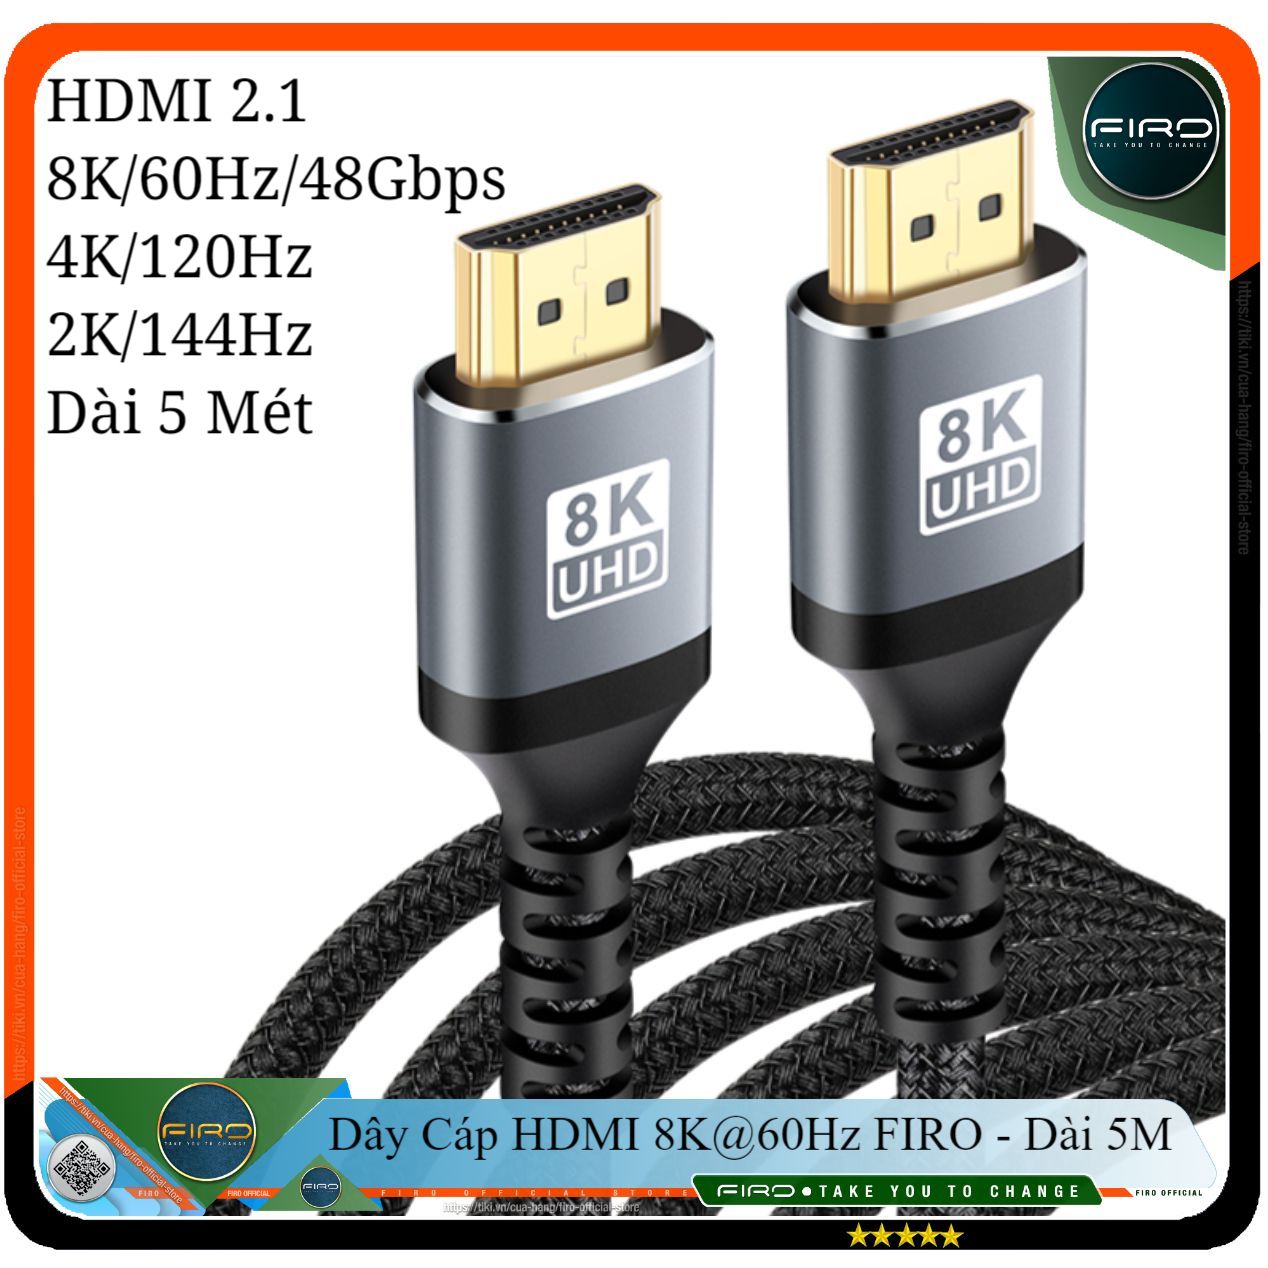 Dây Cáp HDMI 2.1 8K@60Hz/48Gbps - Cáp HDMI FIRO ATMOS Dài 5 Mét - Dây HDMI 2.1 8K/60Hz/48Gbps - 4K/120Hz - 2K/144Hz - Dài 5 Mét Lõi Dù Dùng Cho Tivi/ Máy Tính/ Playstation - Hàng Chính Hãng